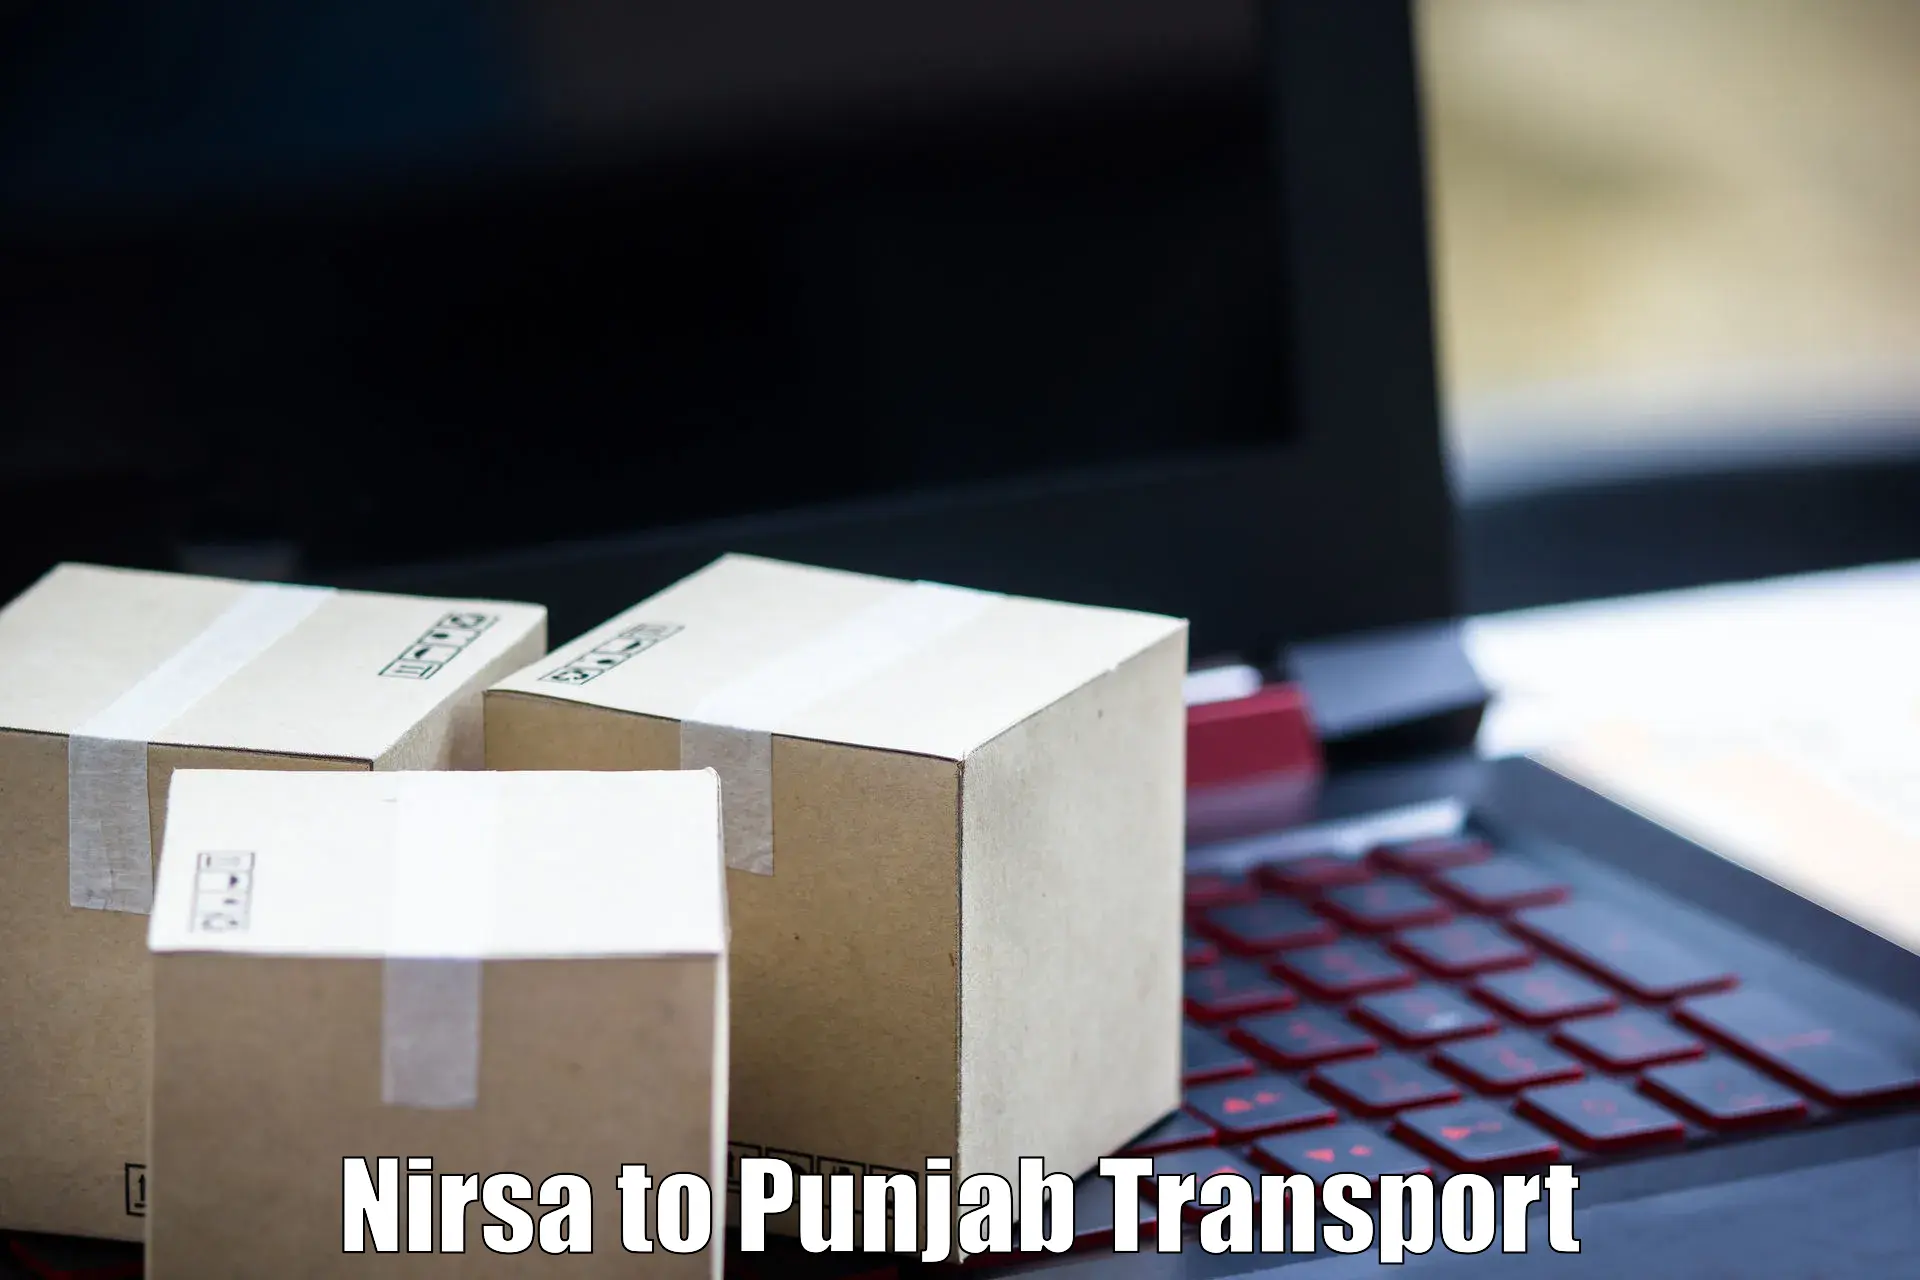 Cycle transportation service Nirsa to Punjab